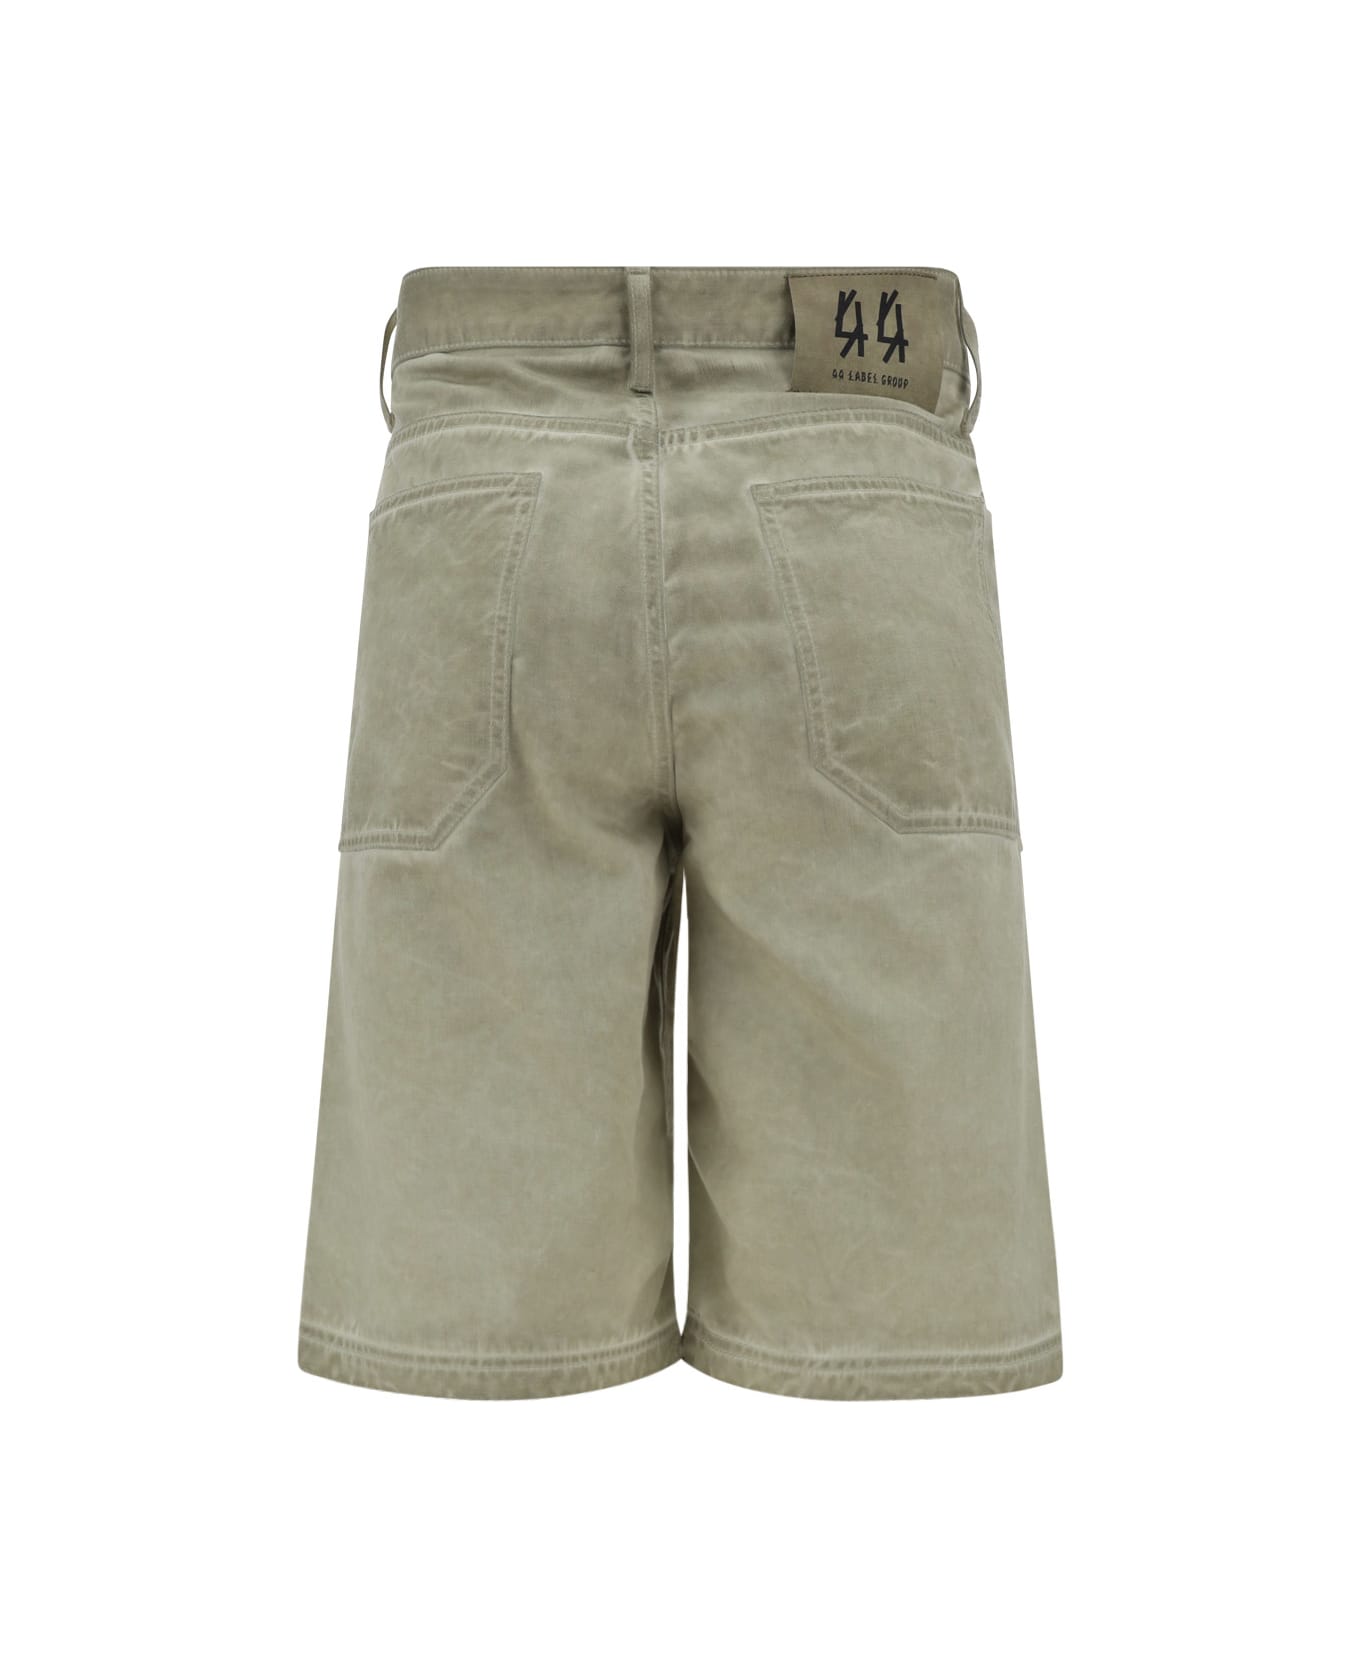 44 Label Group Short Pants - Sabbia ショートパンツ